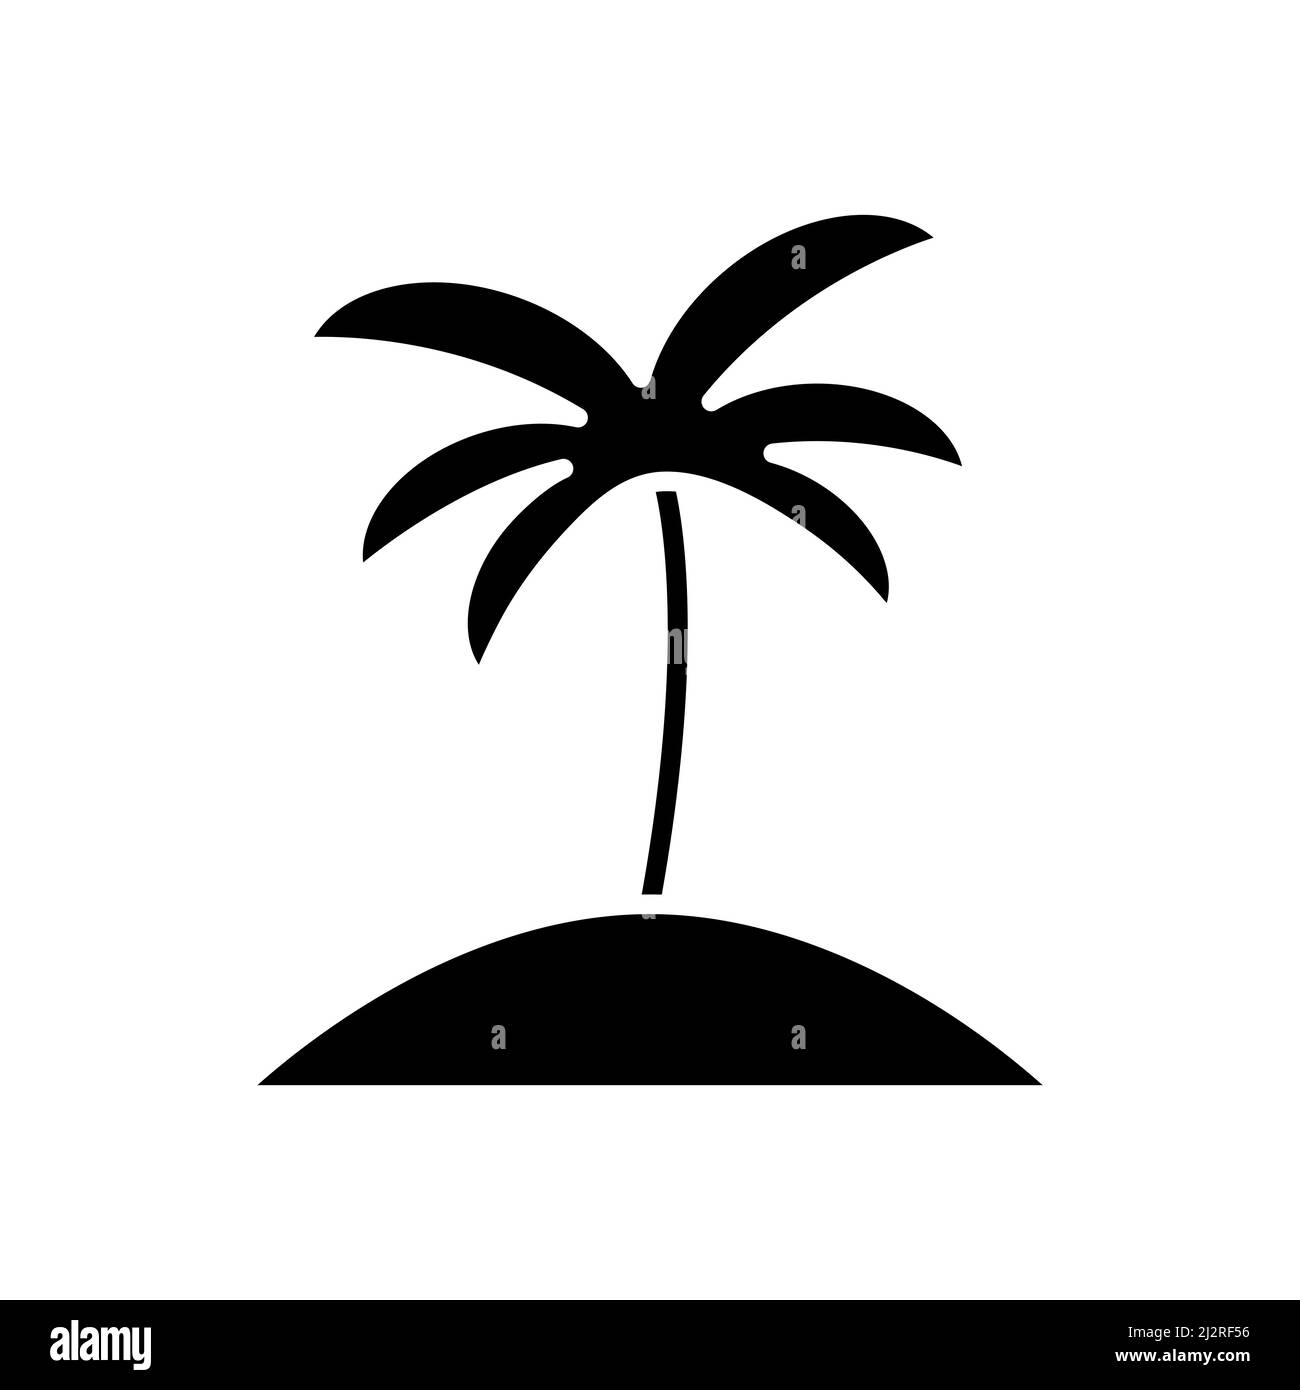 Handflächensymbol. Kokosnussbaum-Umriss. Schwarze Silhouette mit tropischer Handfläche. Vektordarstellung auf weiß isoliert. Stock Vektor